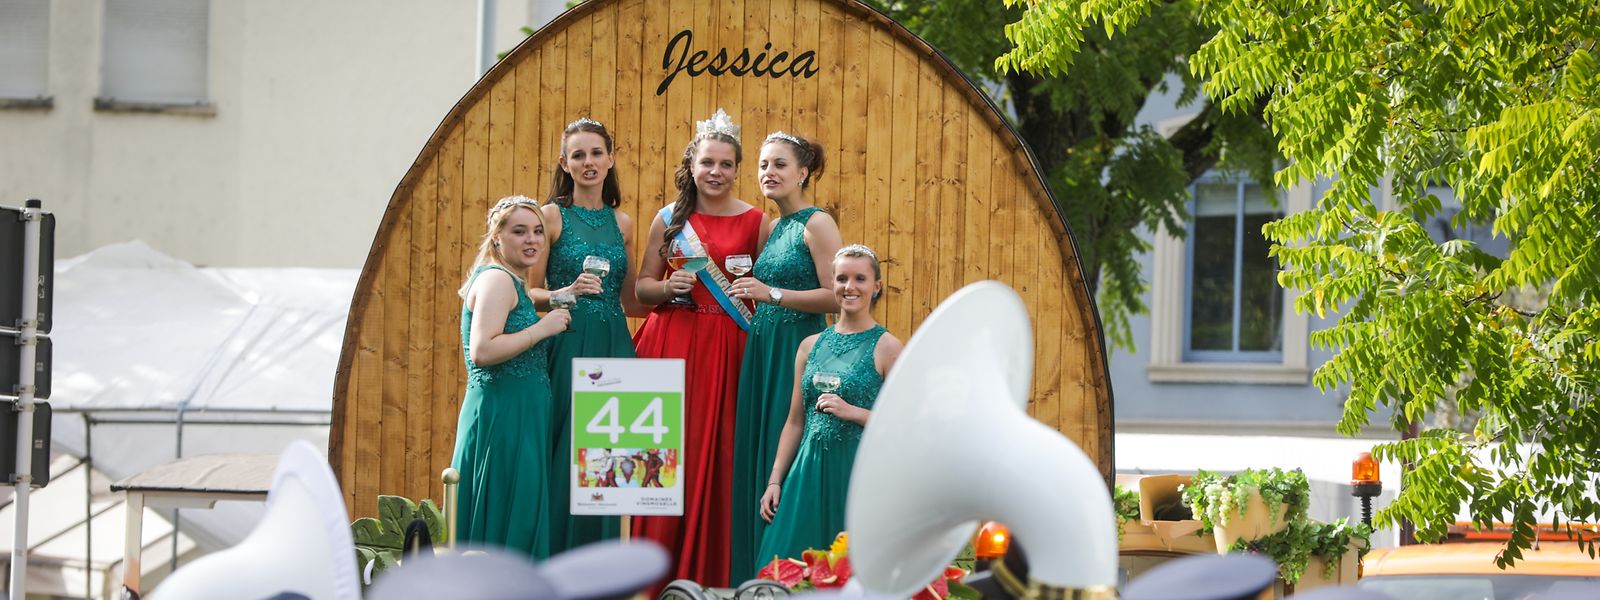 Die neue Weinkönigin Jessica und ihre Prinzessinnen beim Umzug.